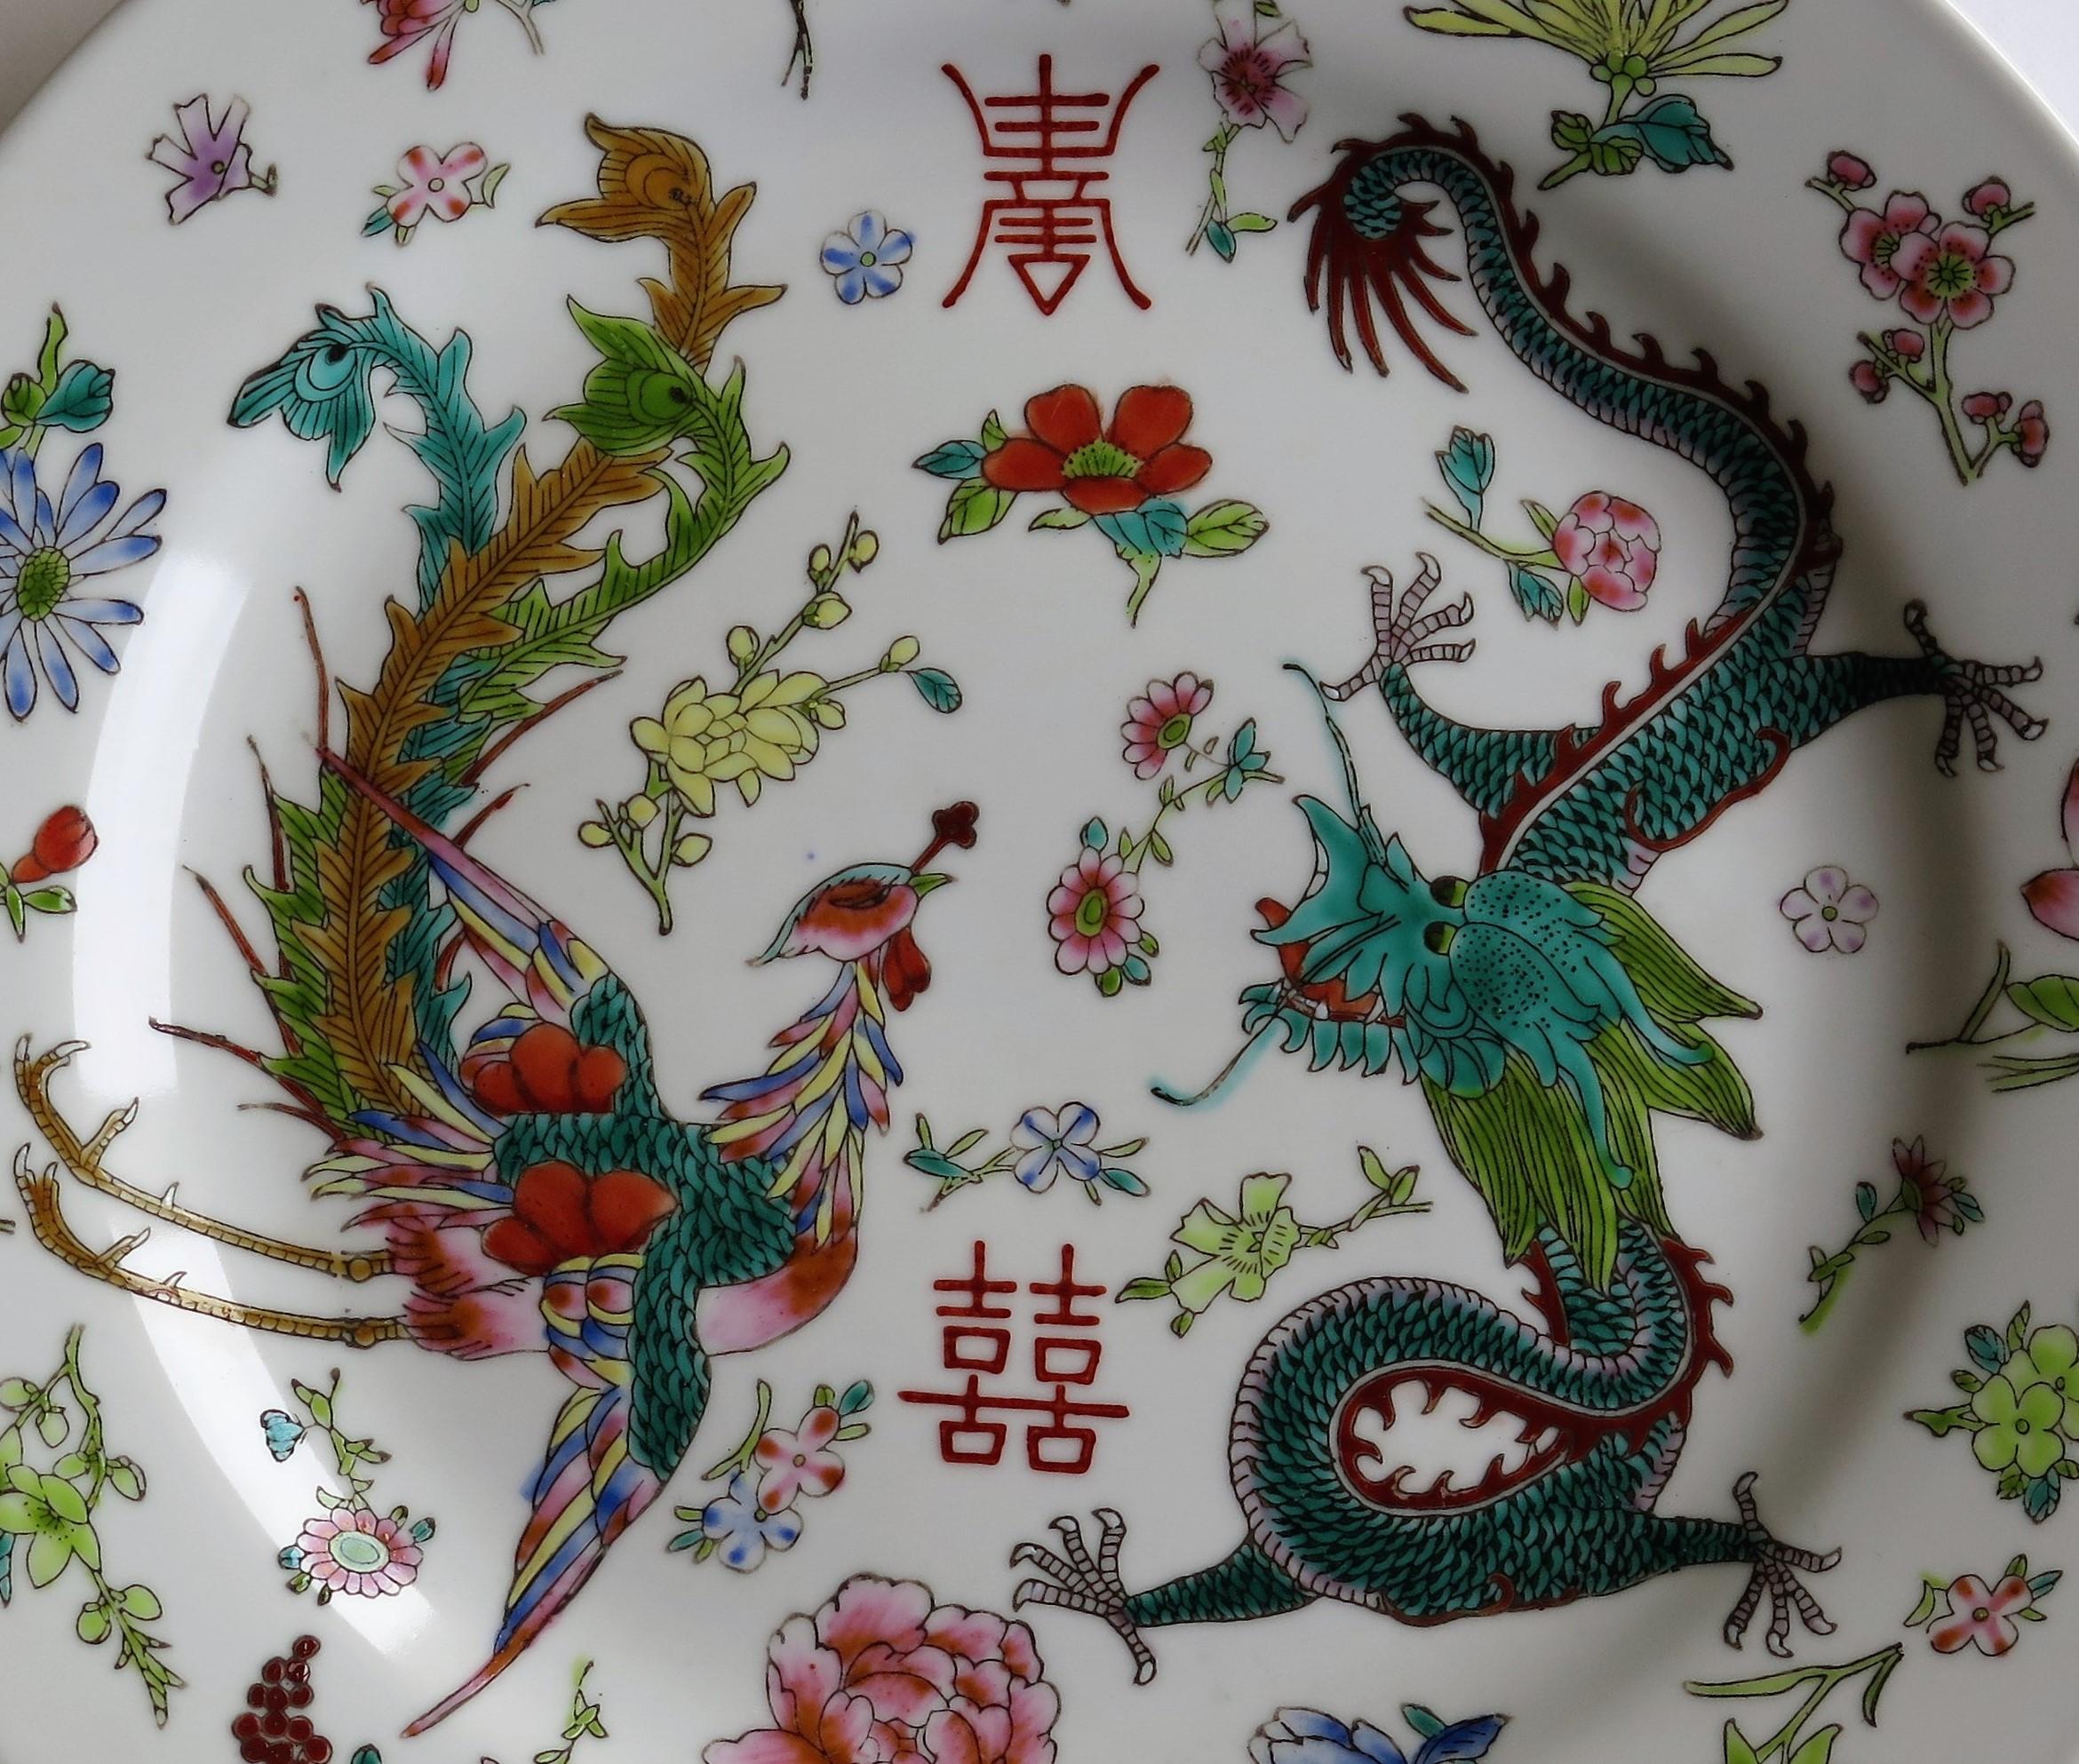 Dies ist eine gute chinesische Export-Porzellan-Teller, die schön Hand emailliert wurde, über-Glasur, in sehr gutem Detail, aus der Zeit um 1950.

Das Hauptmotiv ist von Hand mit verschiedenfarbiger Emaille überglasiert und zeigt einen